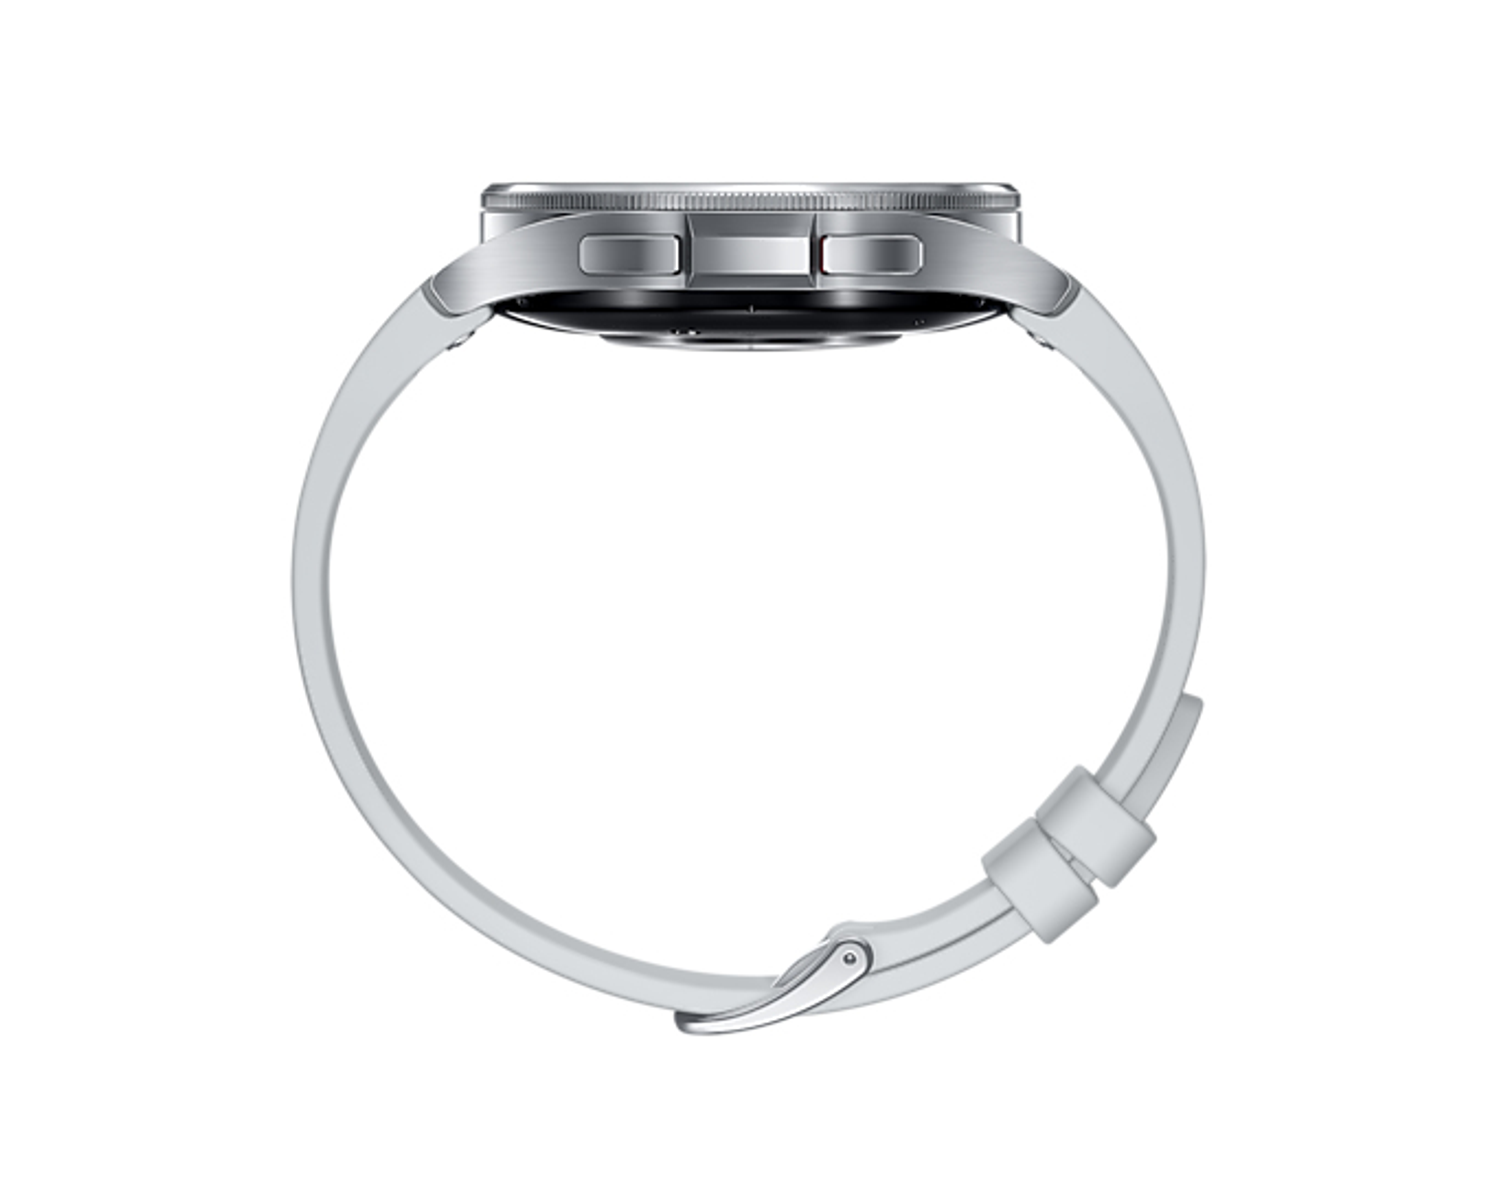 Silber Edelstahl, SAMSUNG Edelstahl SM-R965FZSAXEF Smartwatch